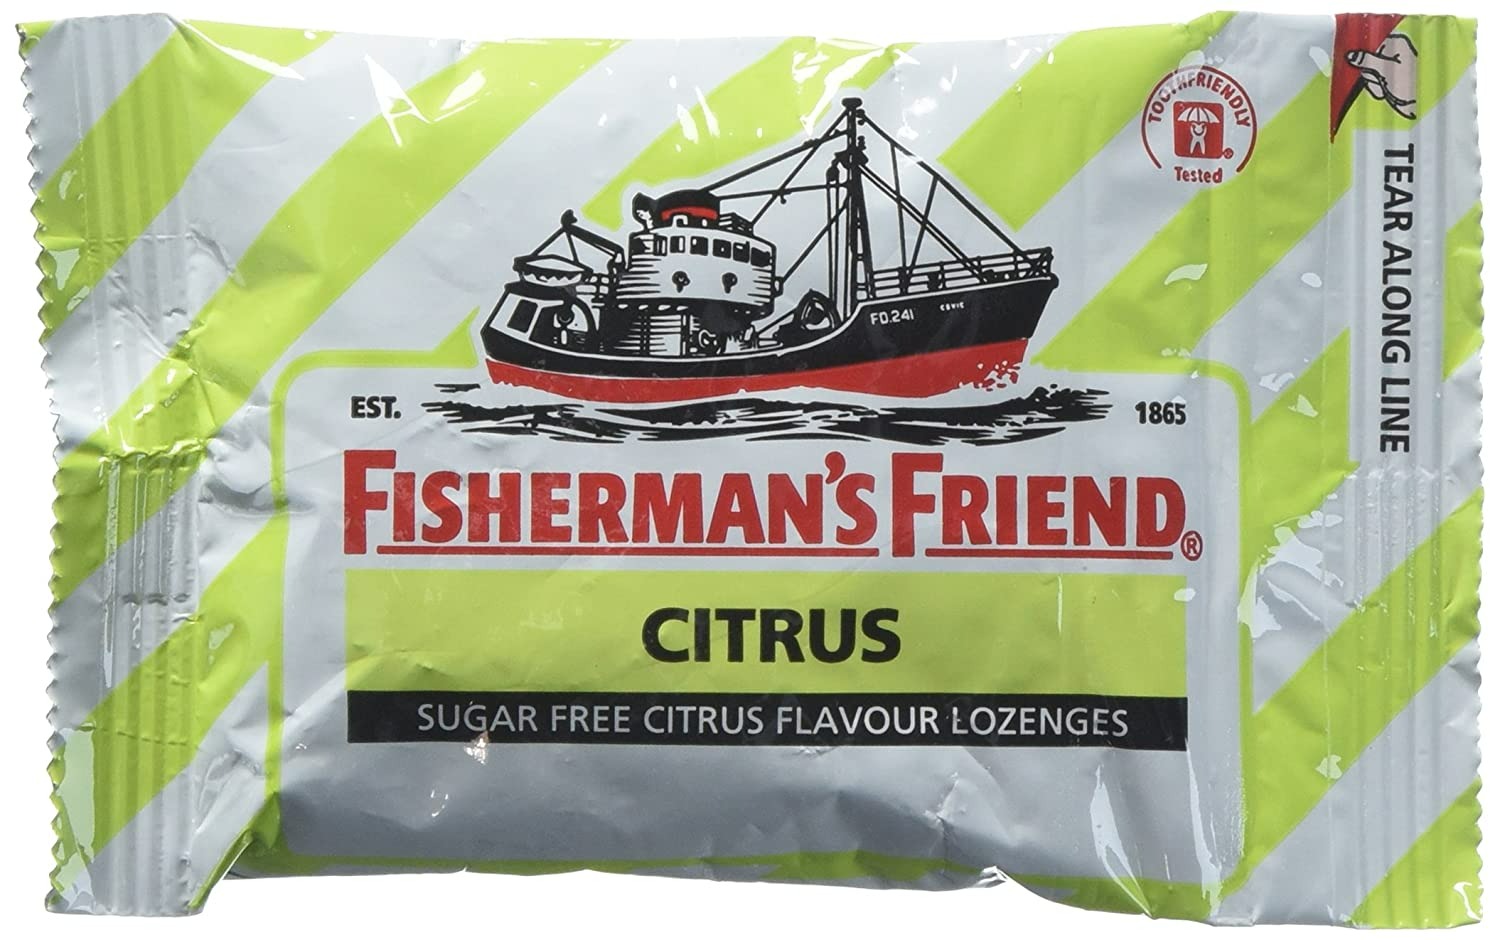 Fisherman's Friend Citrus Fravour Lozenges Sugar Free Candy 25g -2 Paket-0